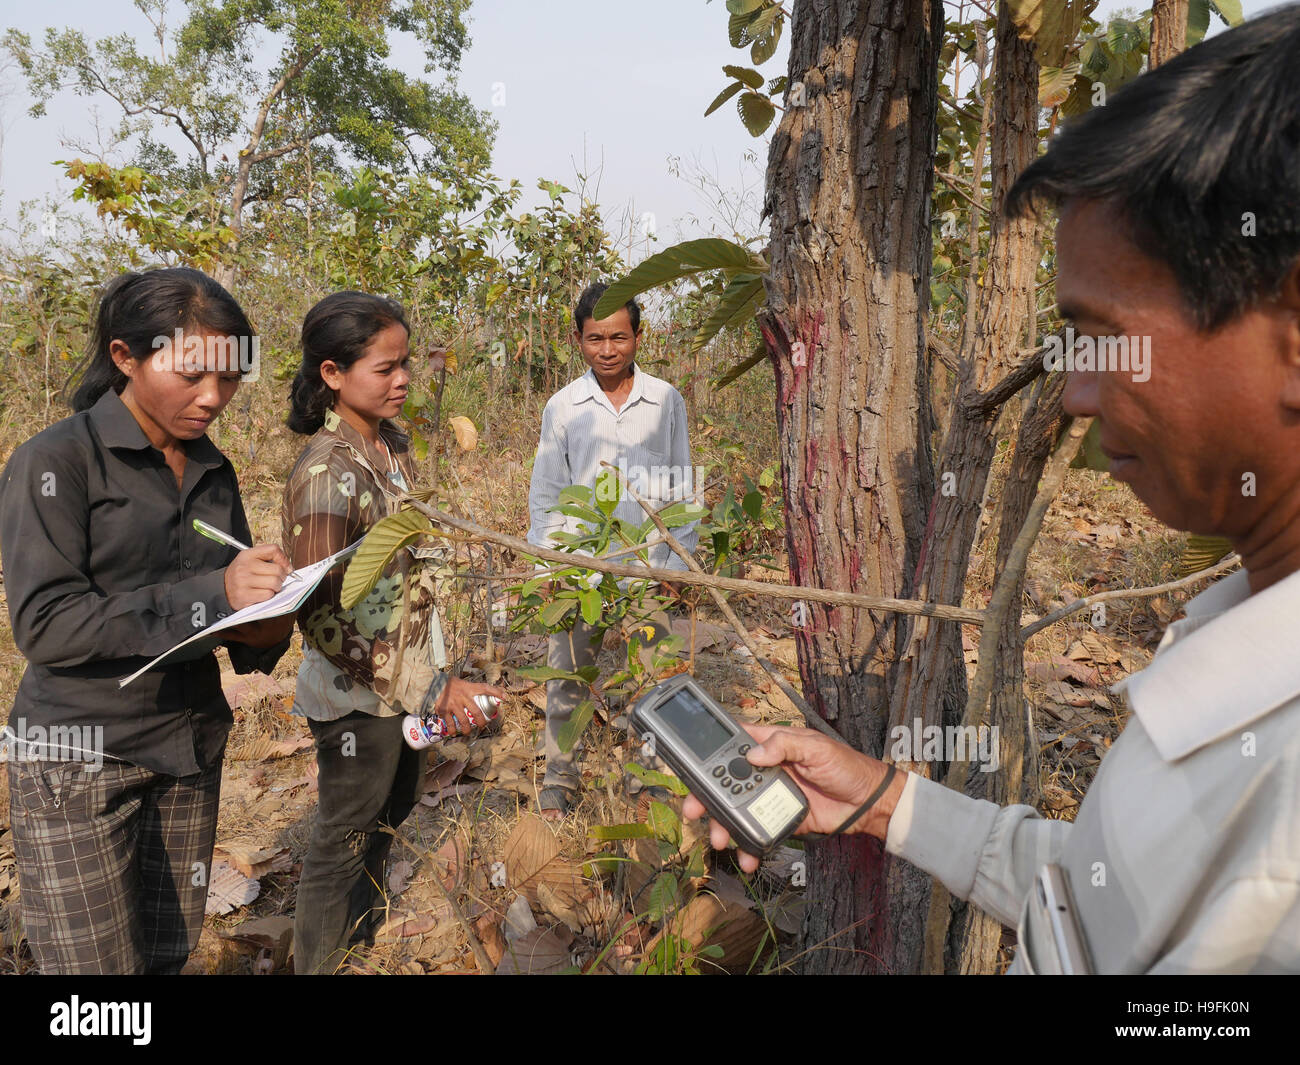 Cambogia, Stung Treng, Katot village, abitata da tribù Brao. Utilizzando il GPS per lavorare fuori i confini terrestri al fine di het una terra titolo dal governo. Sean Sprague foto Foto Stock